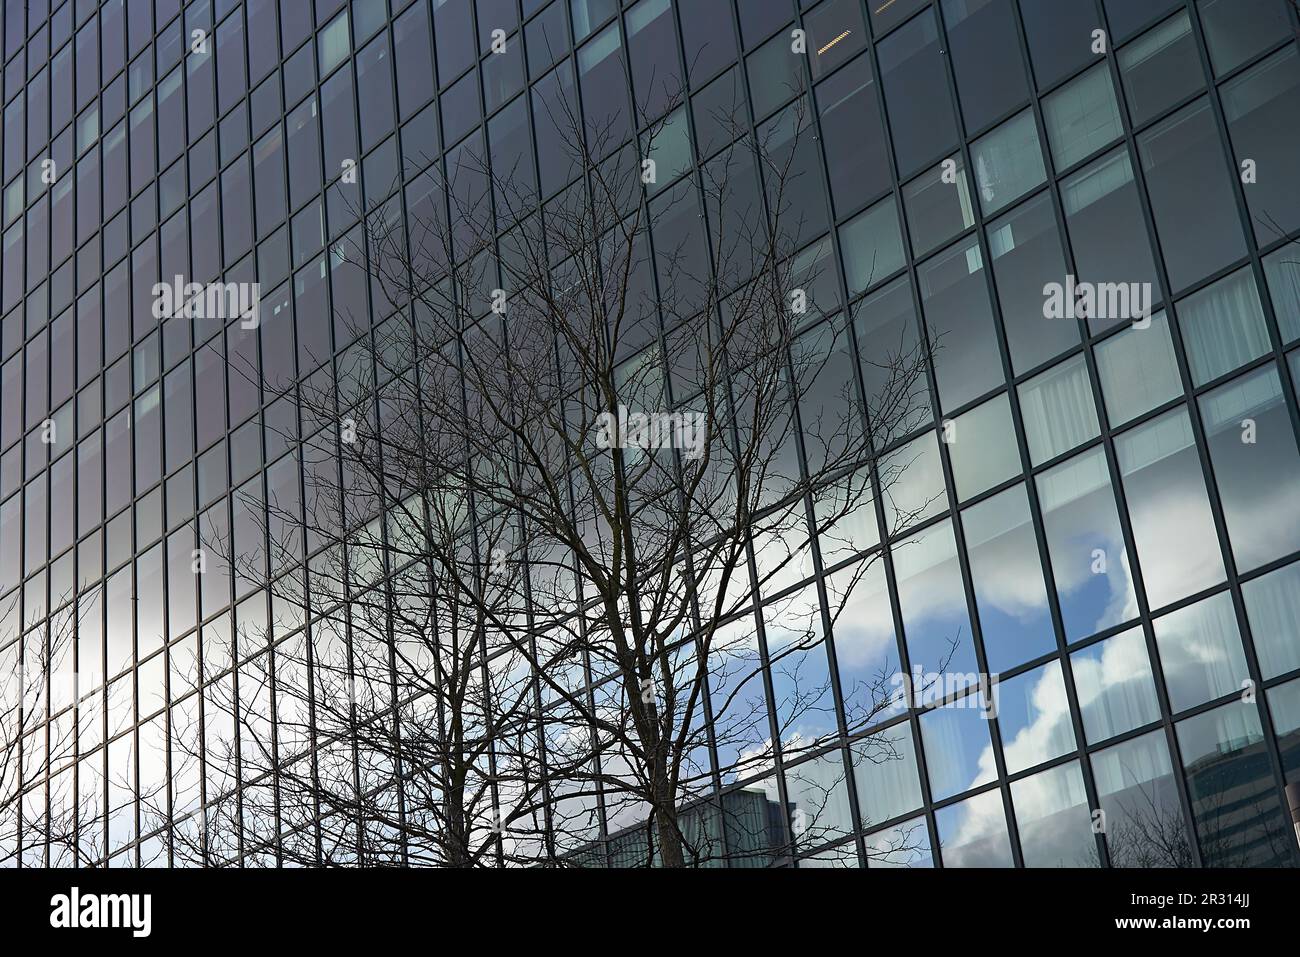 Fenêtres en verre réfléchissant sur la façade d'un immeuble de bureaux de grande hauteur Banque D'Images